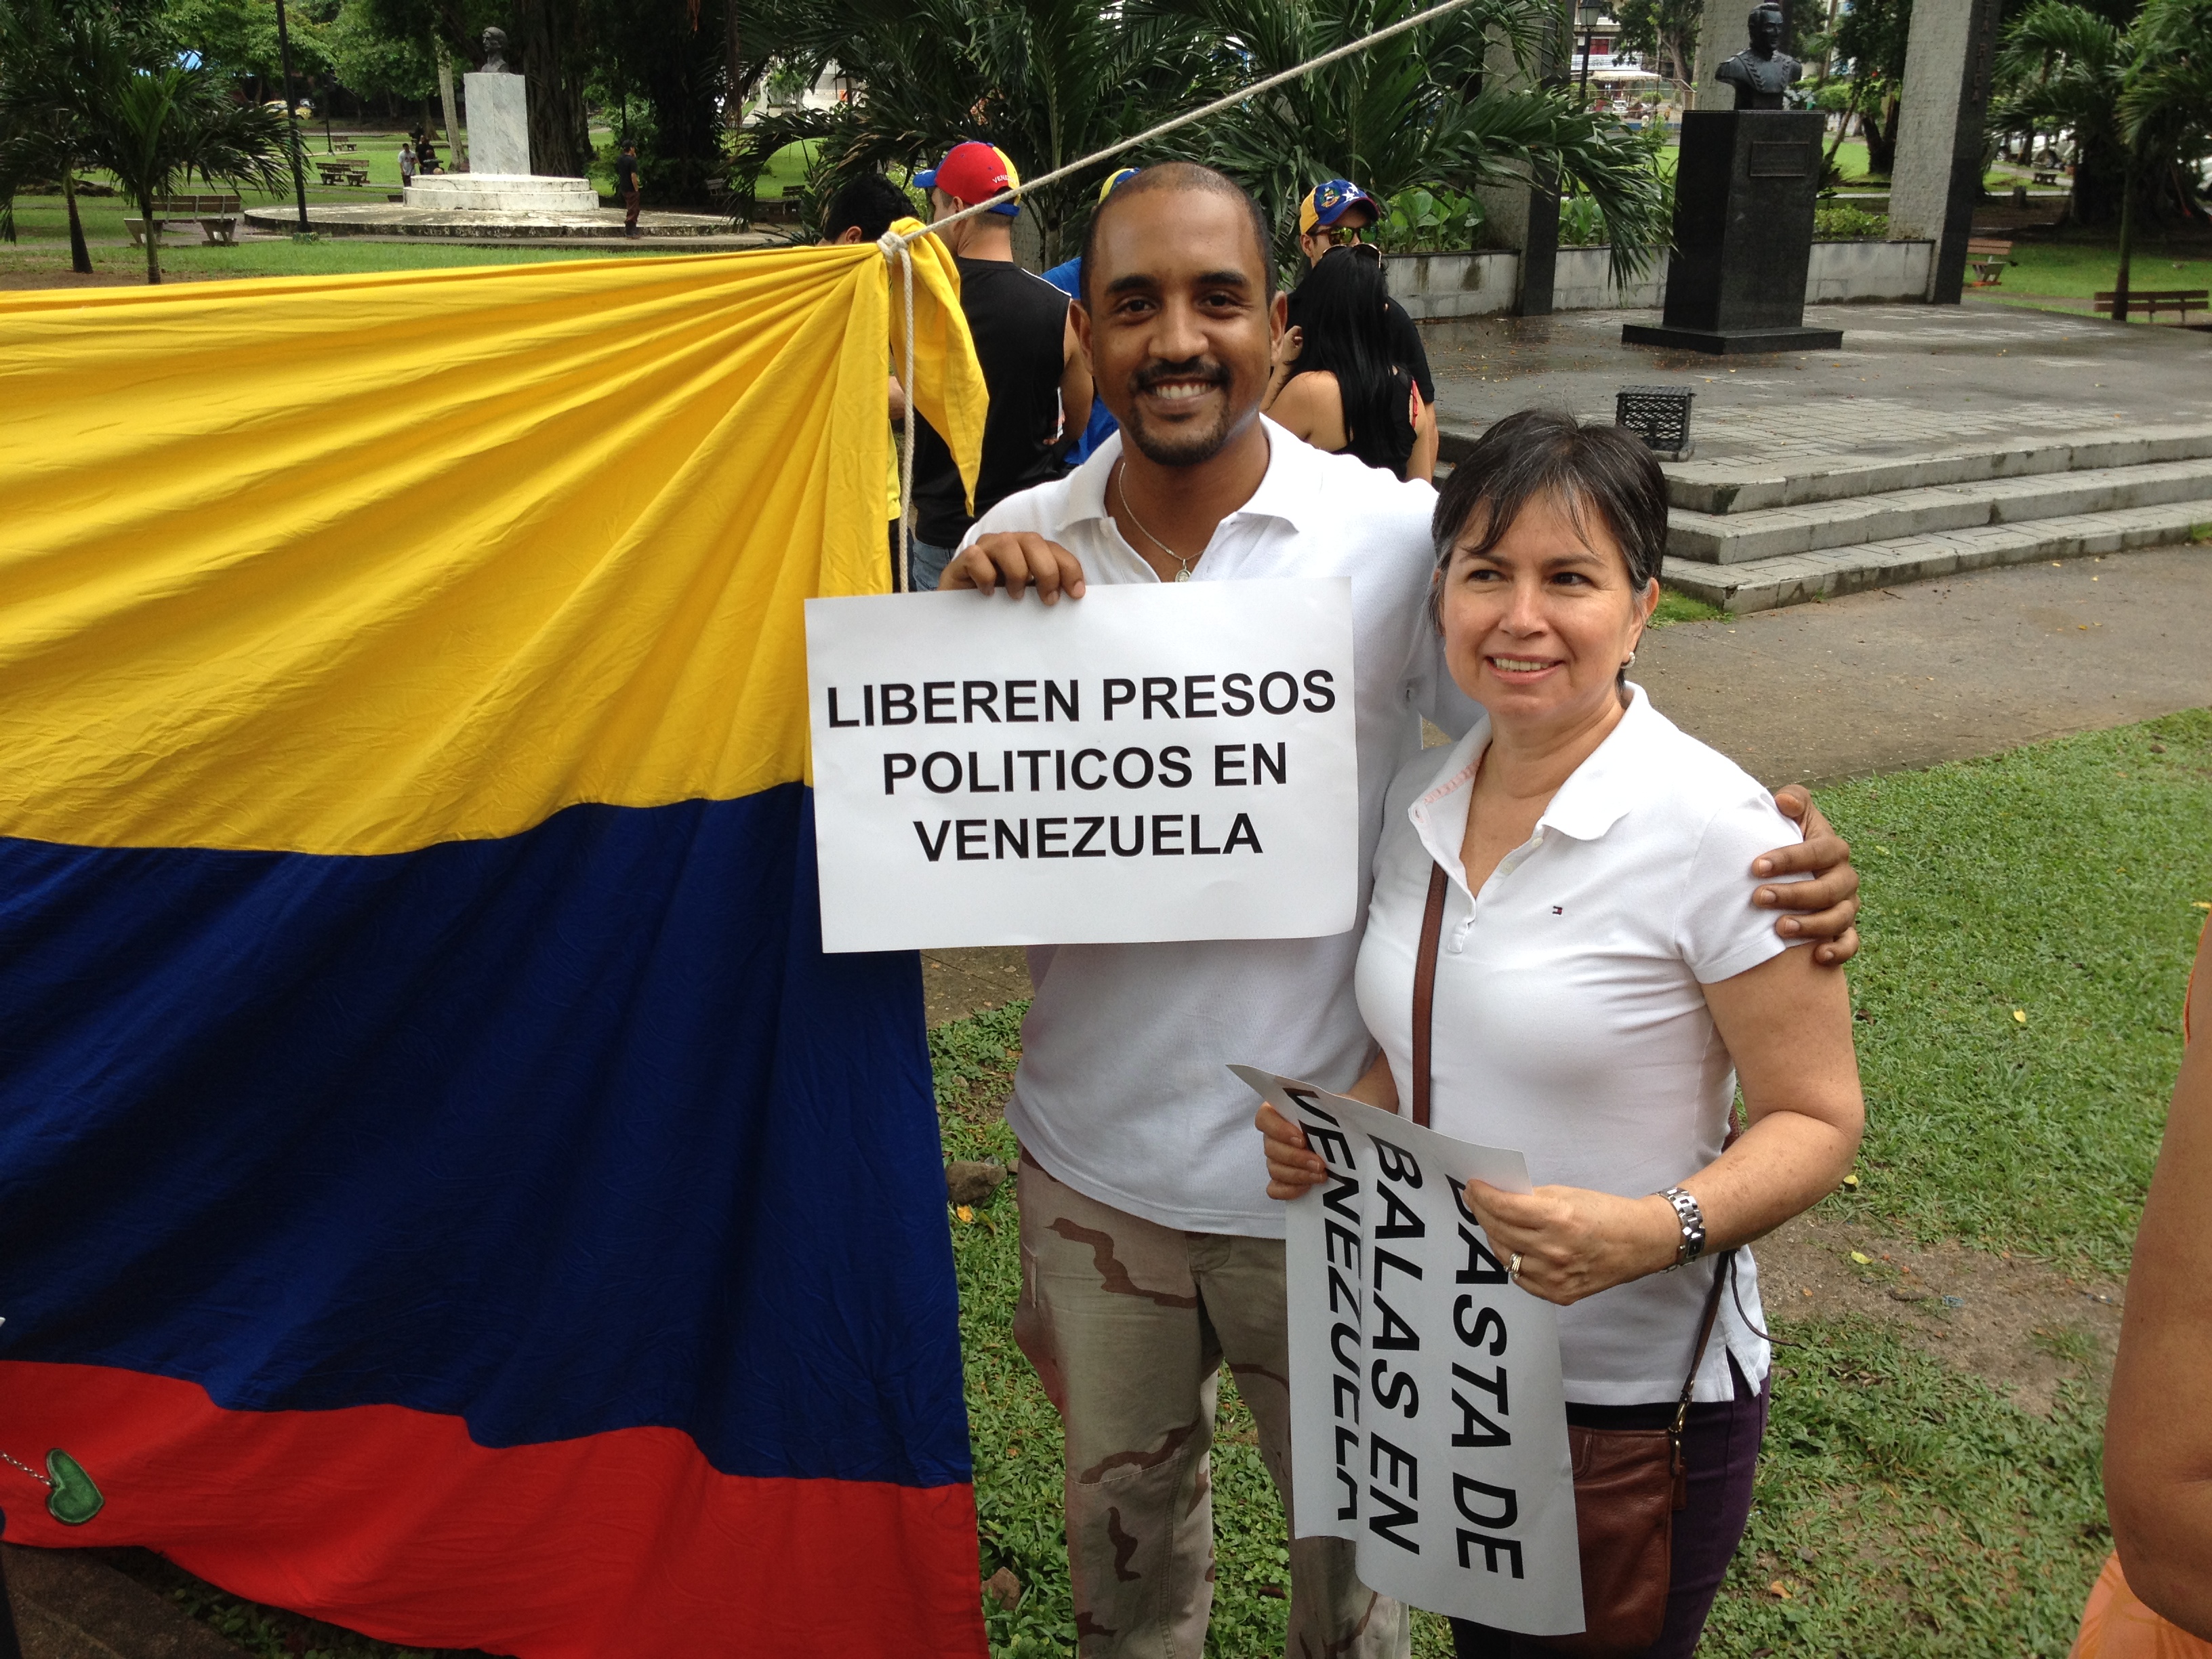 Rey Feurtado, panameño, participó en la concentración en contra de la represión en Venezuela